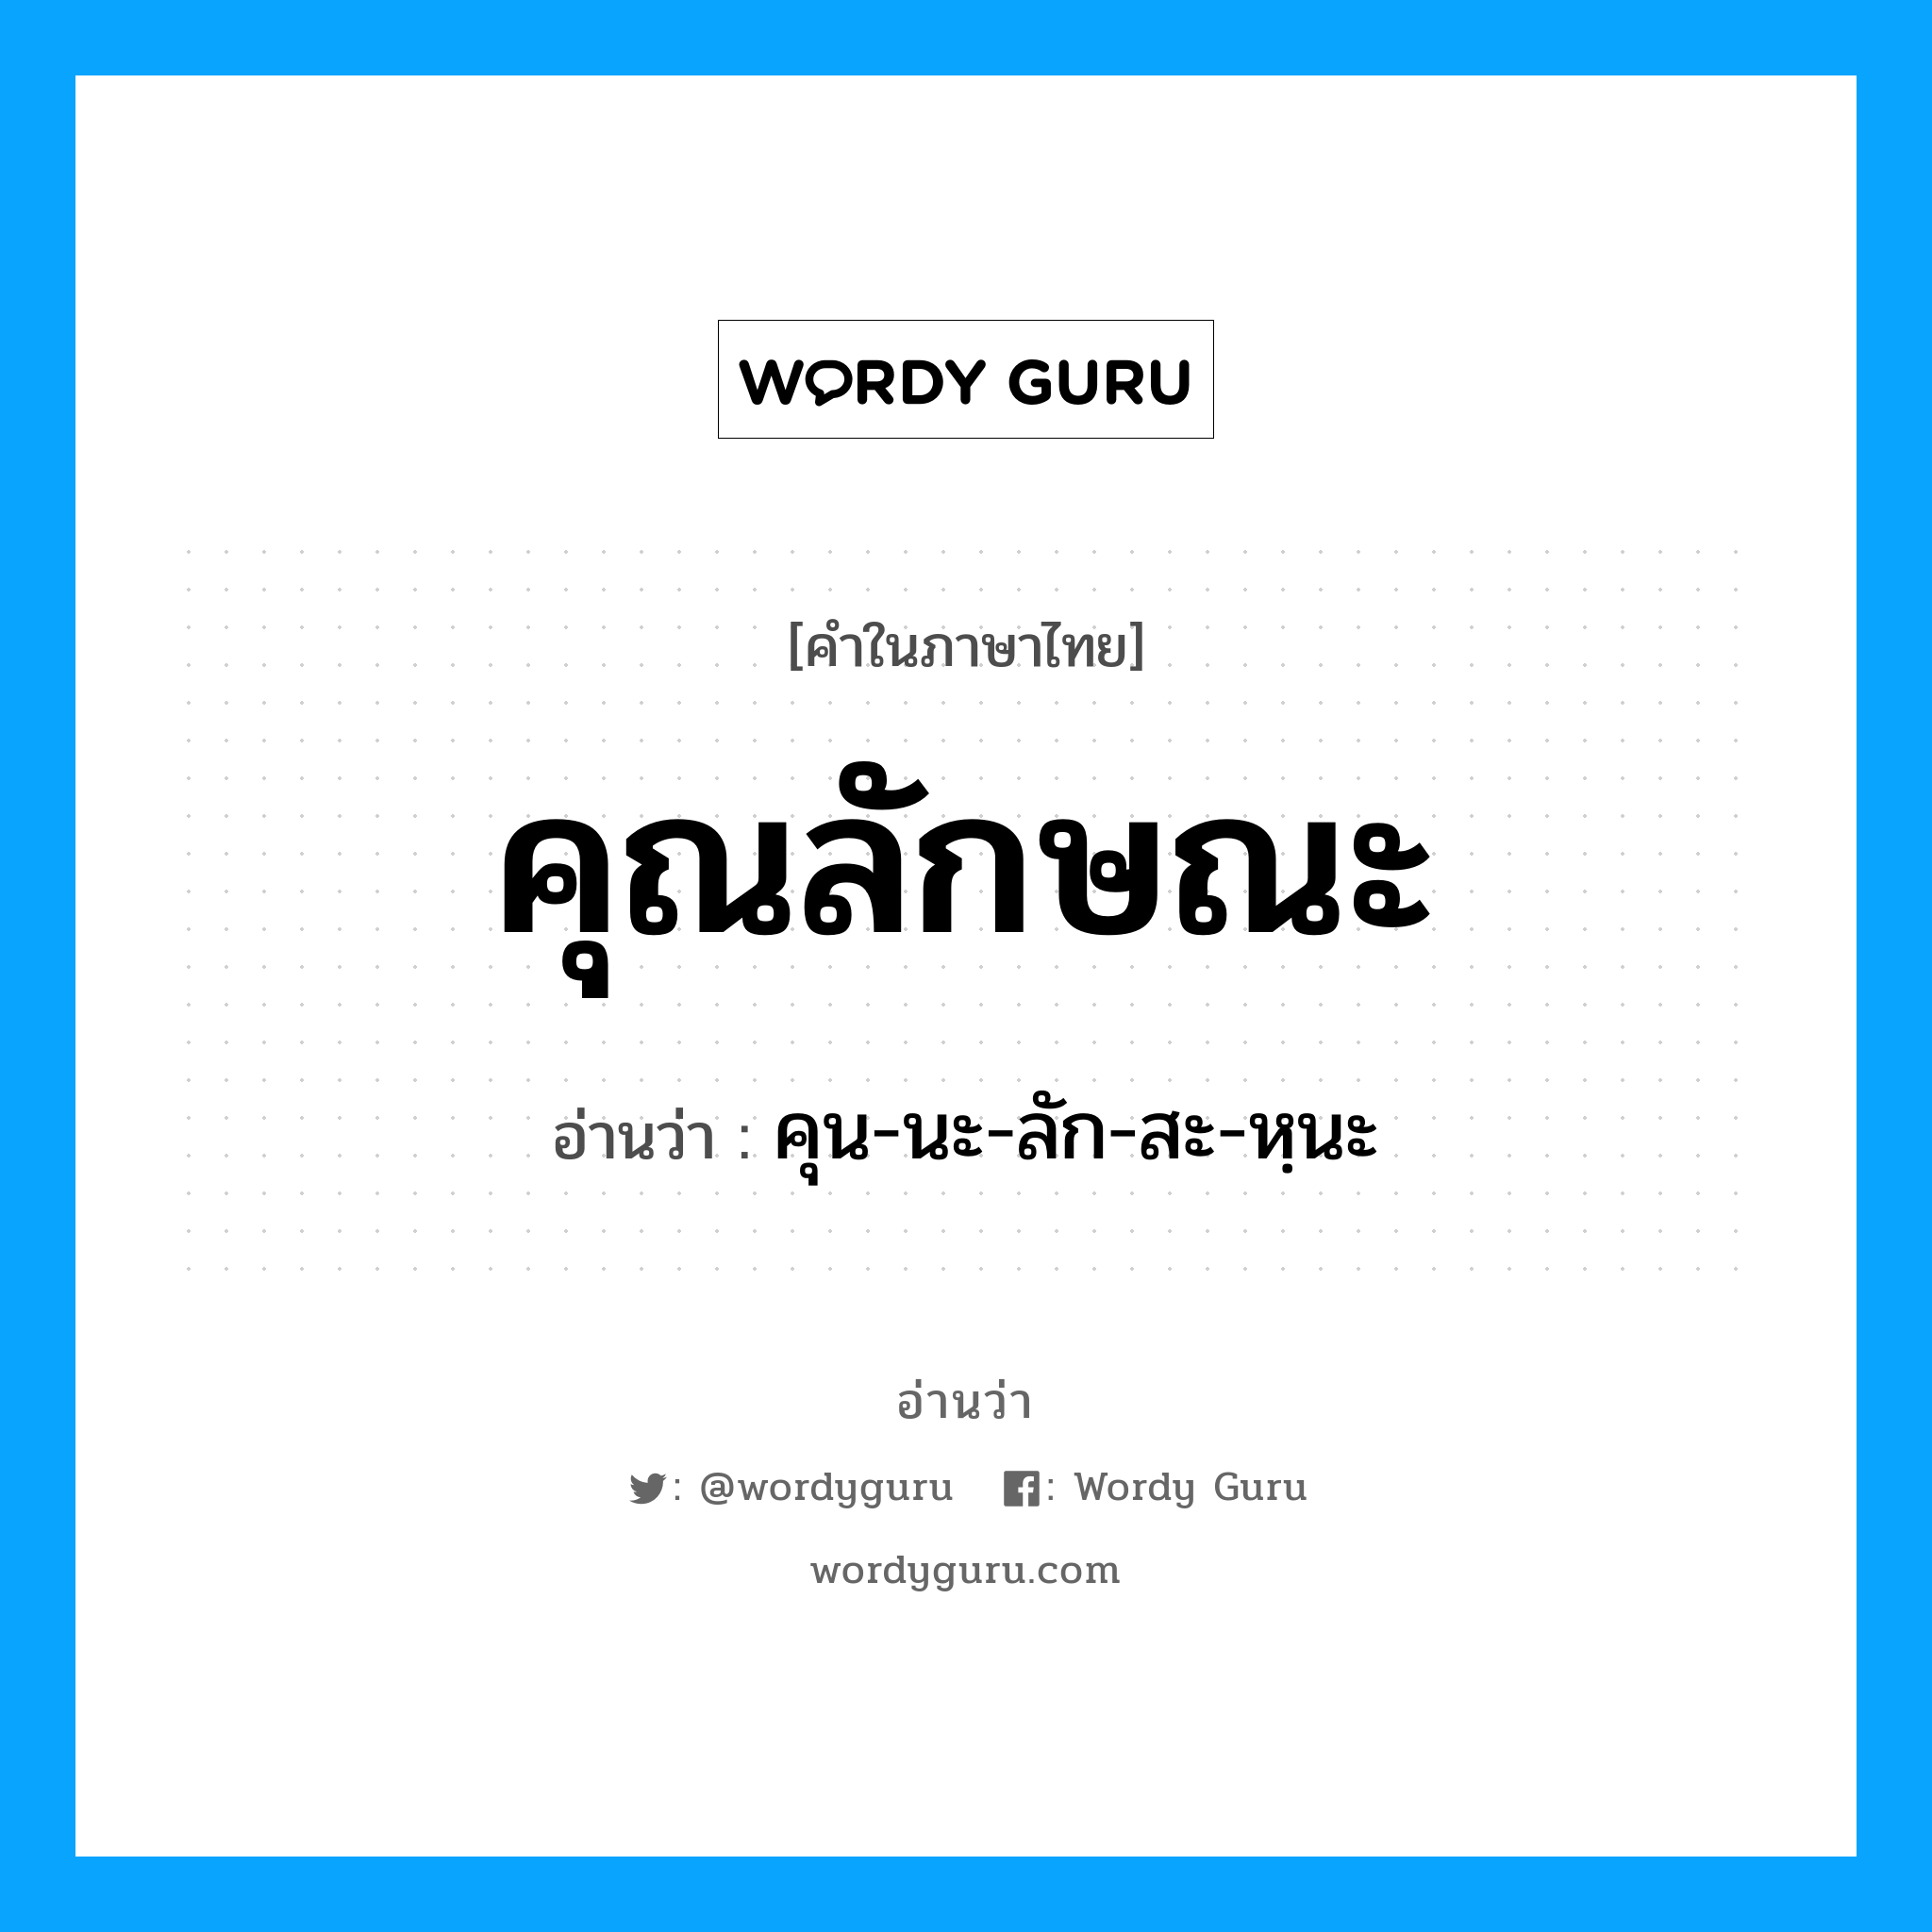 คุน-นะ-ลัก-สะ-หนะ เป็นคำอ่านของคำไหน?, คำในภาษาไทย คุน-นะ-ลัก-สะ-หฺนะ อ่านว่า คุณลักษณะ